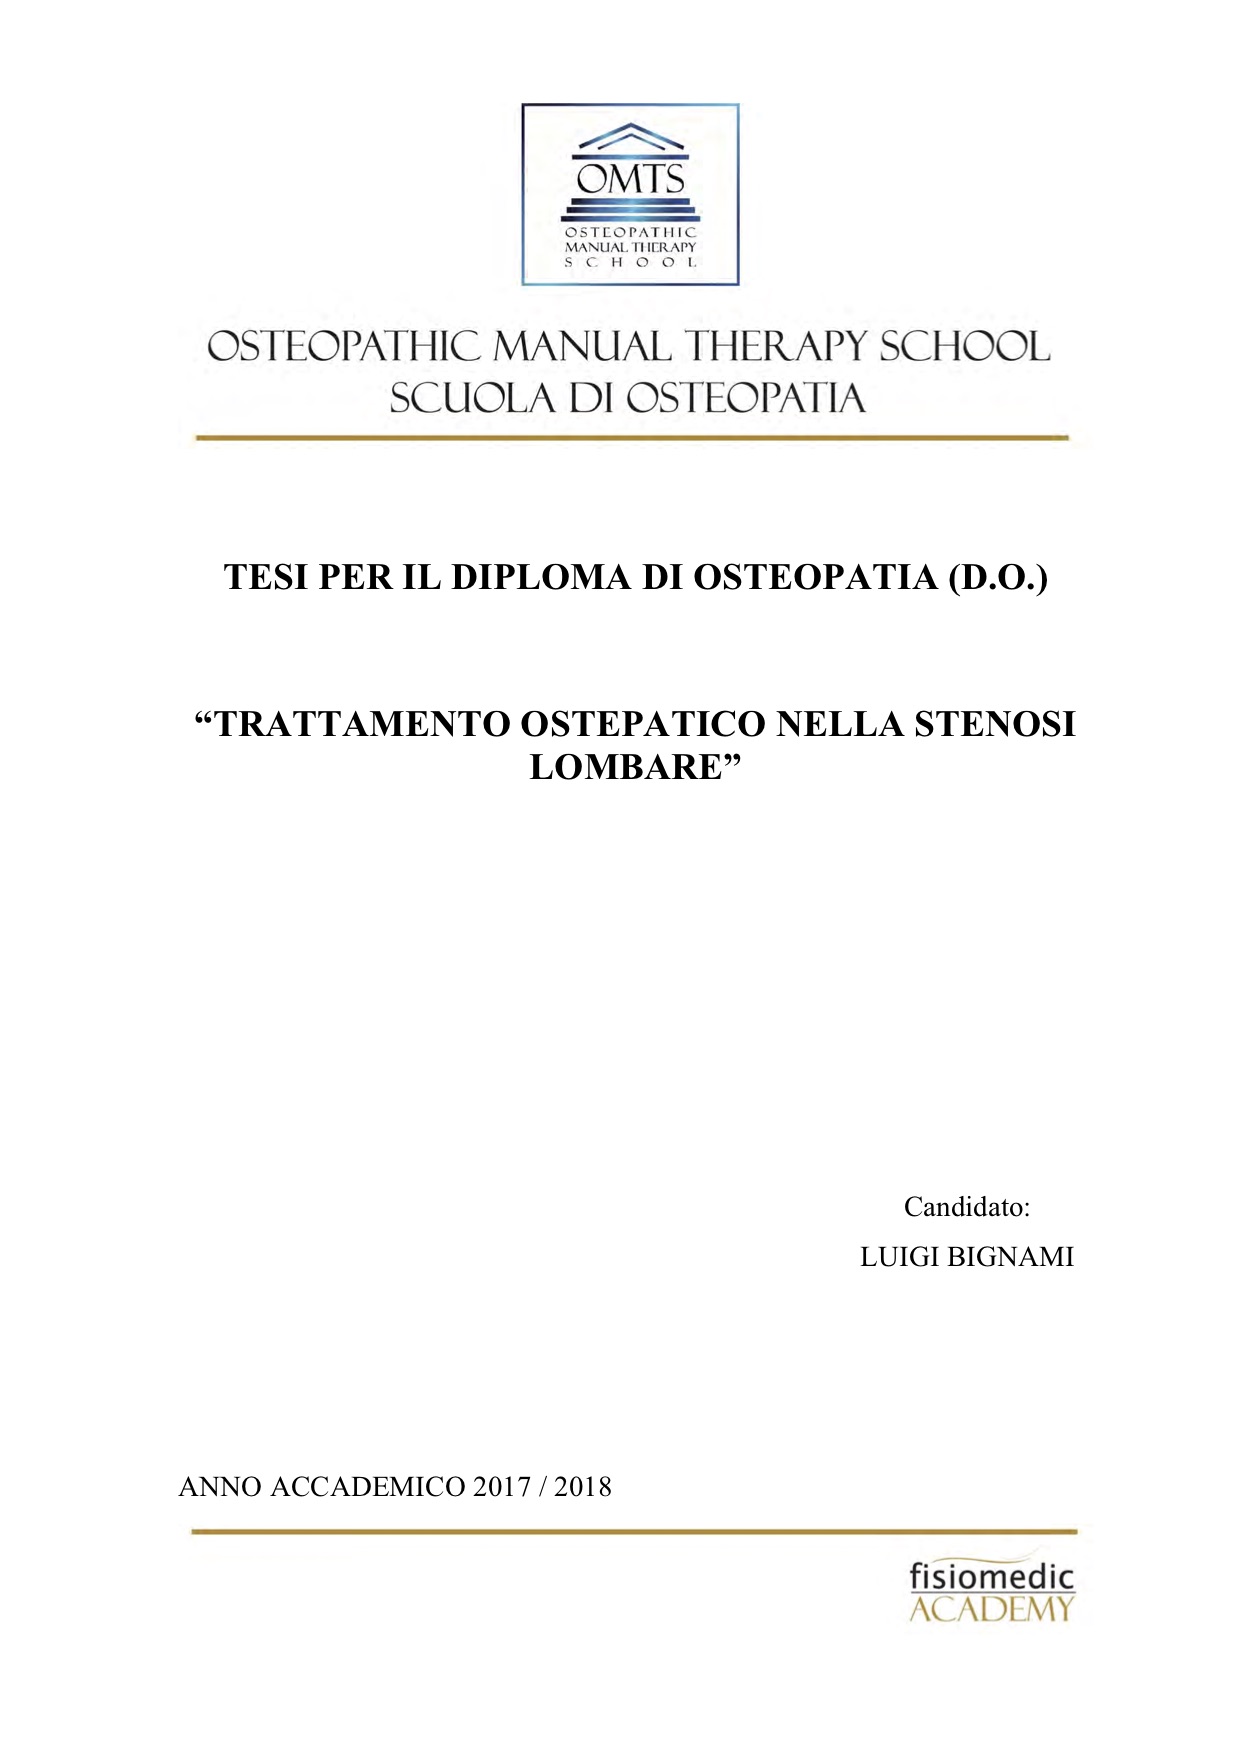 Luigi Bignami Tesi Diploma Osteopatia 2018